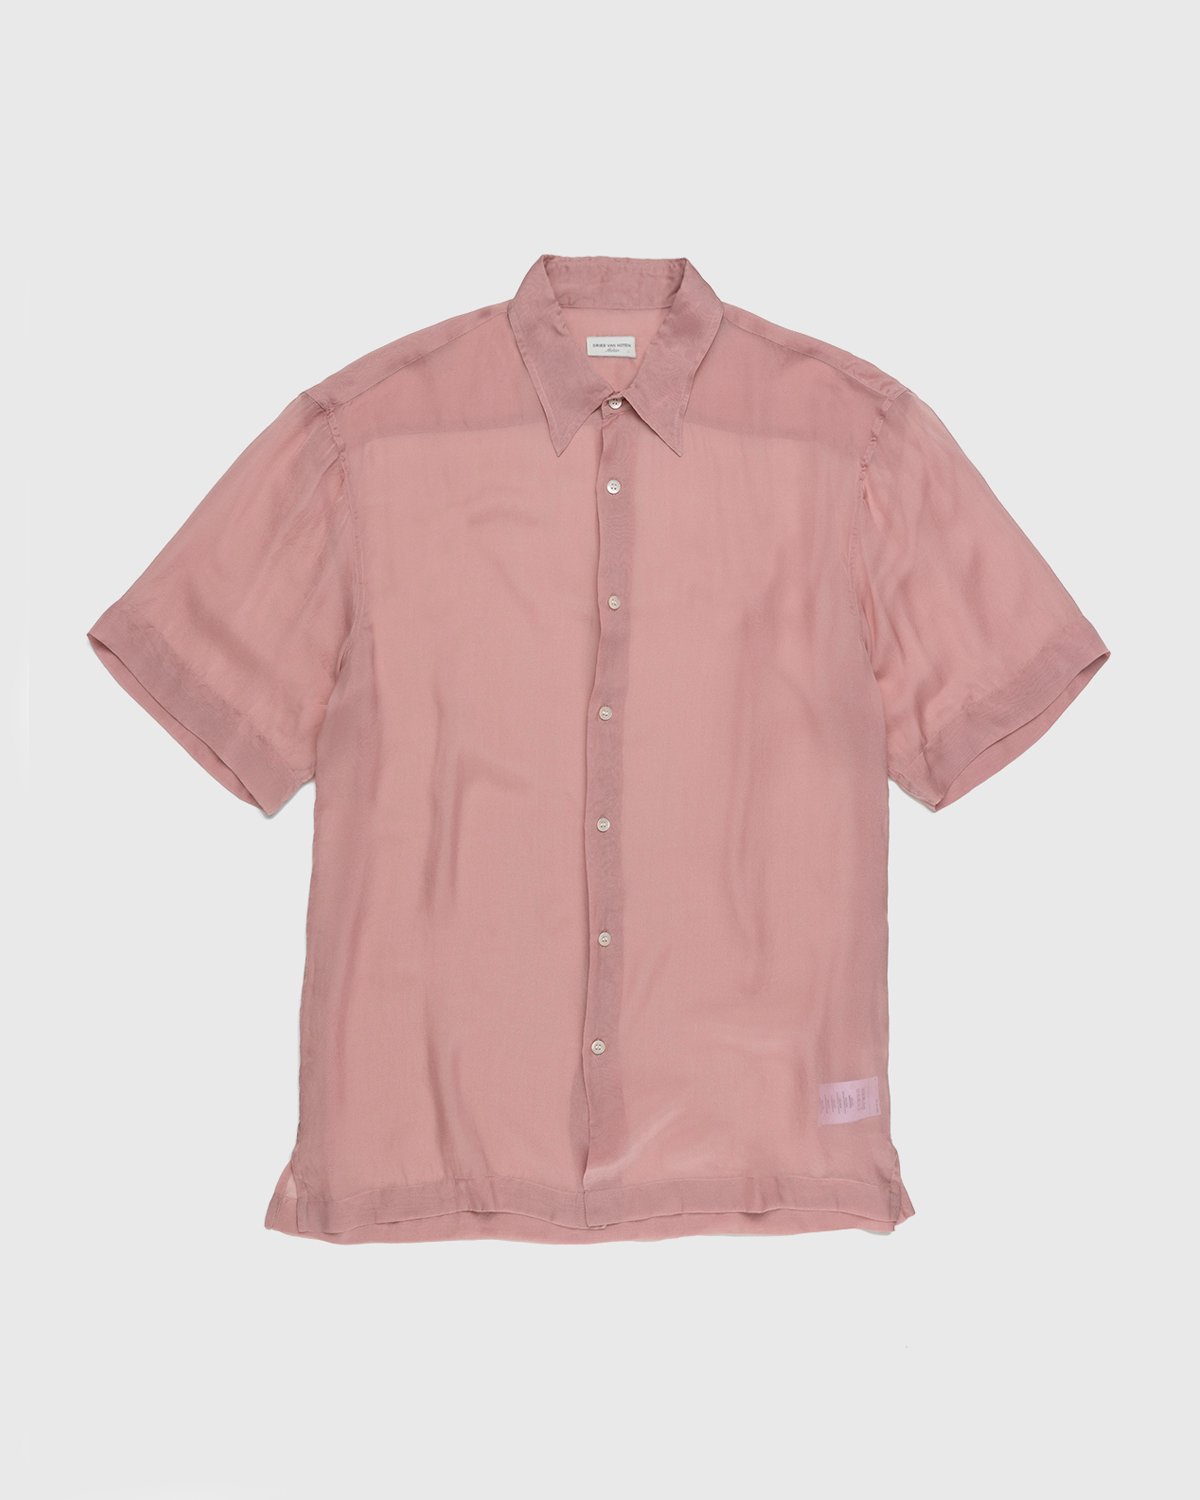 Dries van Noten - Cassidye Shirt Rose - Clothing - Pink - Image 1